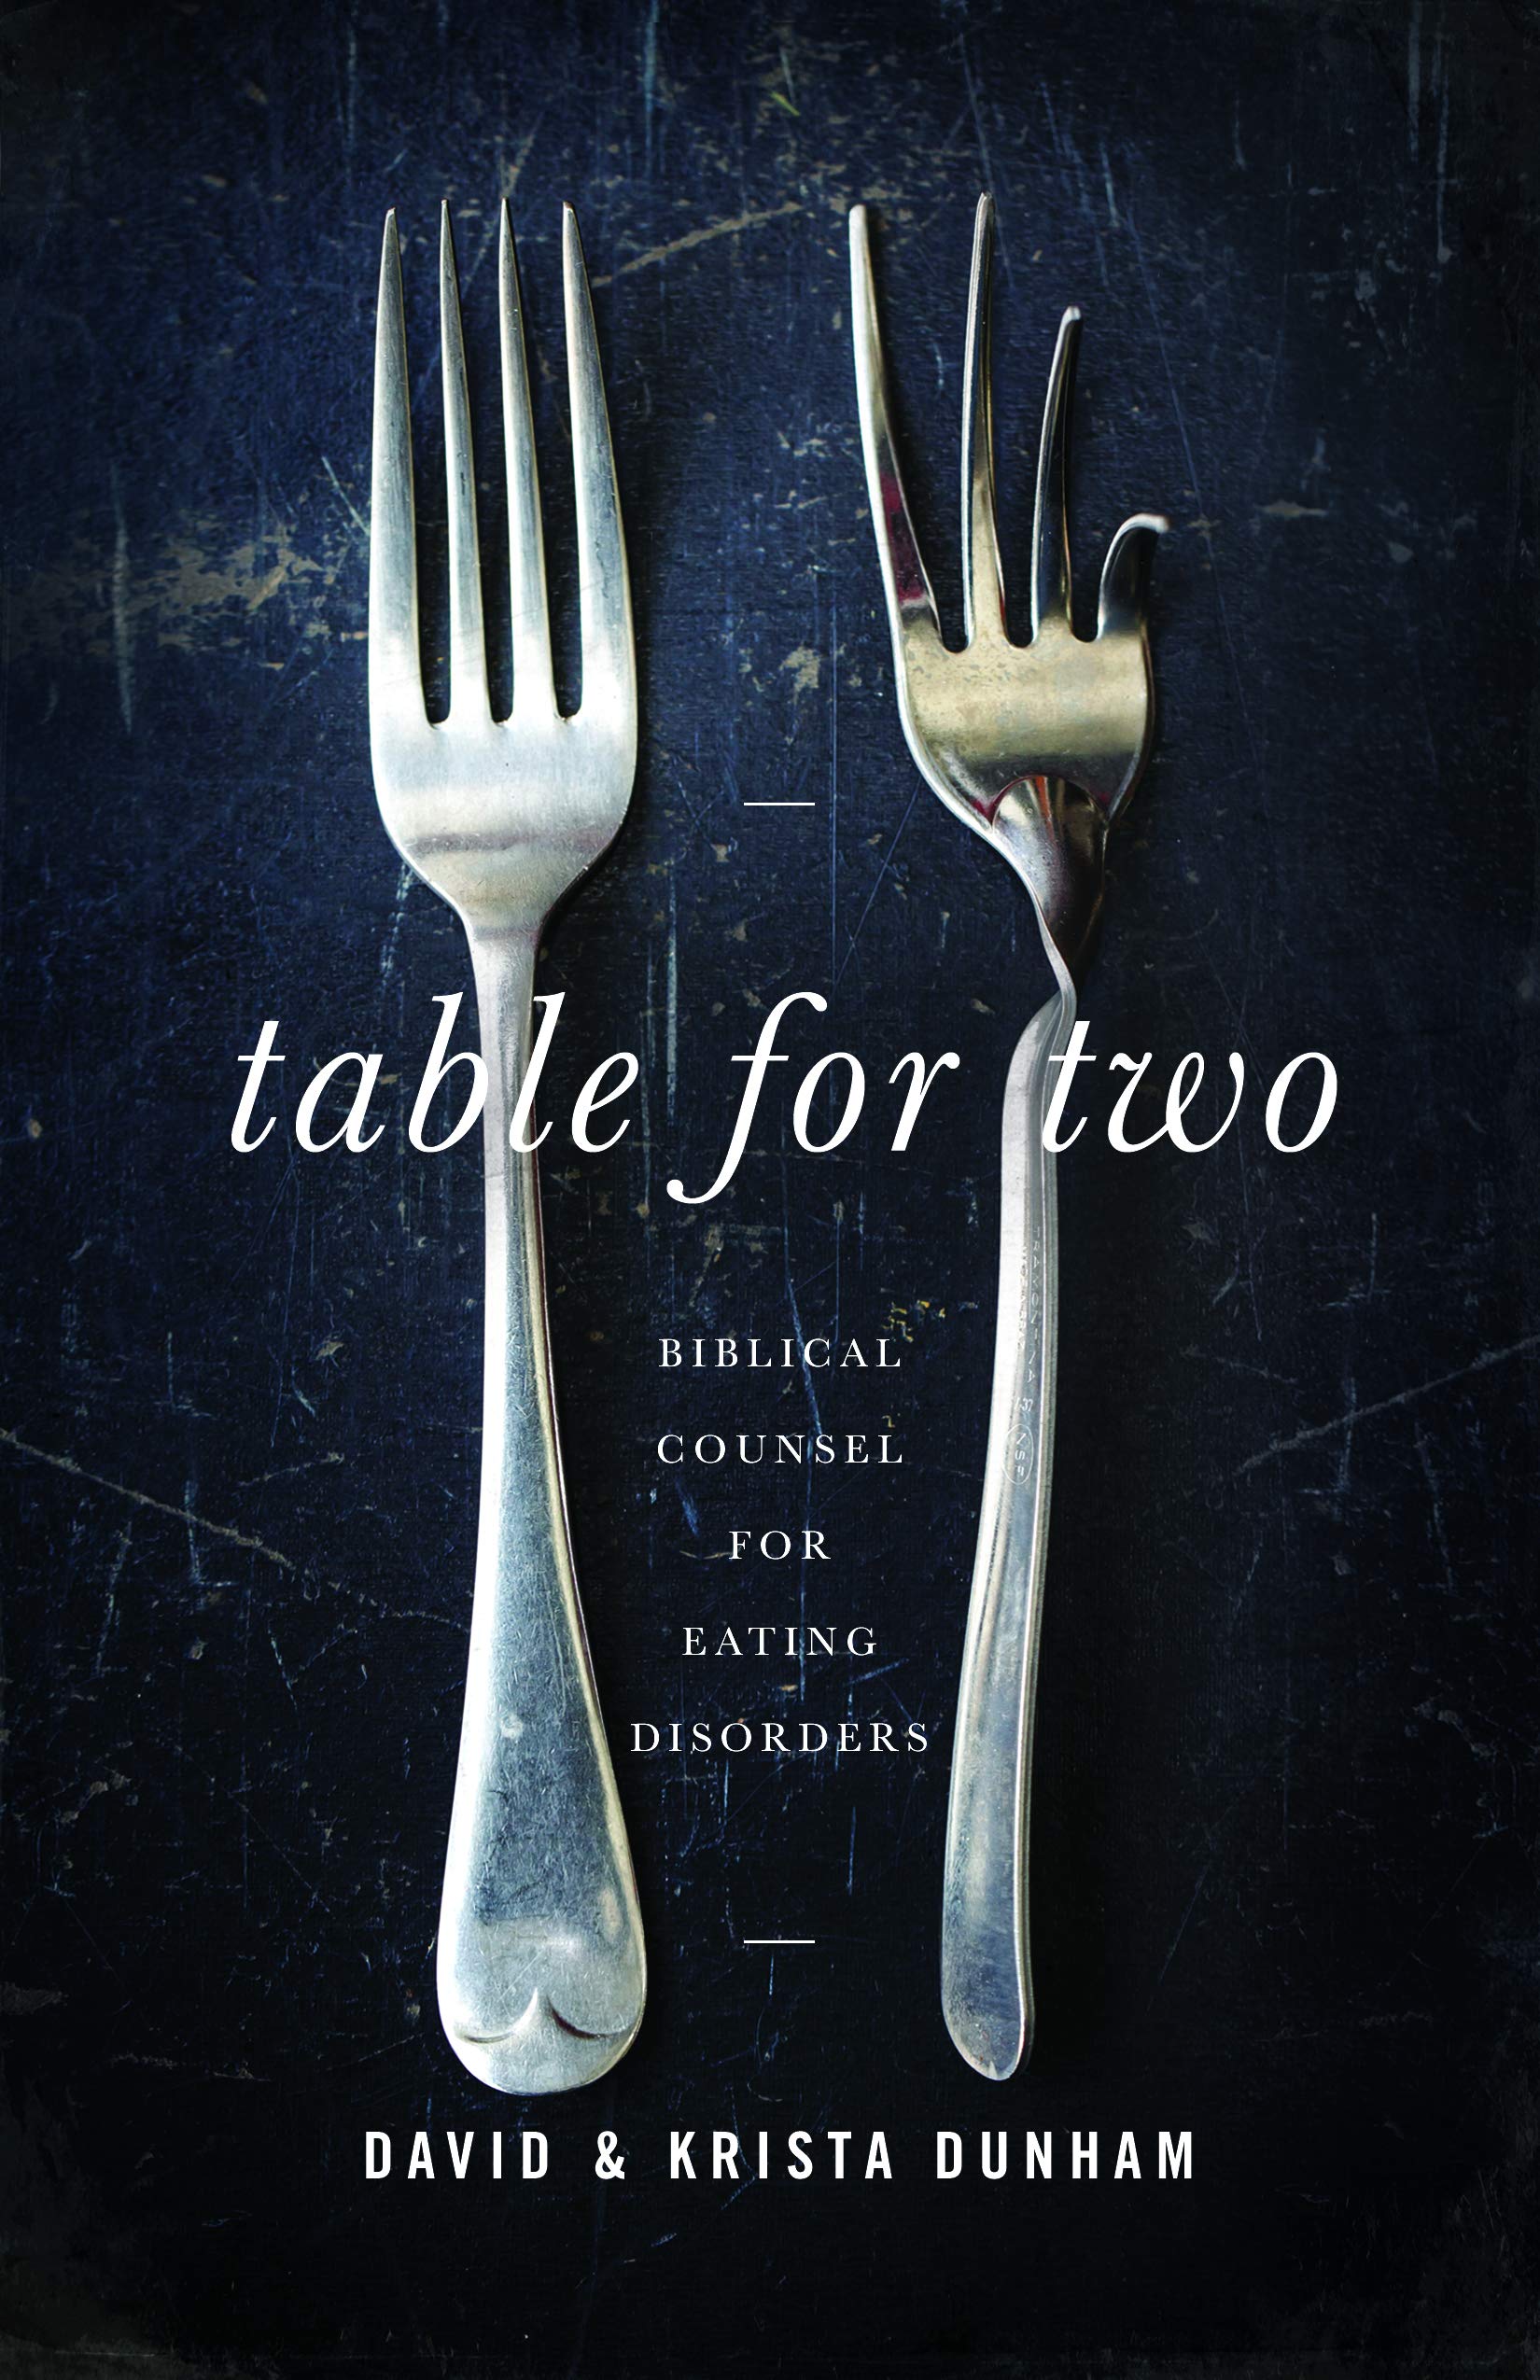 TABLE FOR TWO David & Krista Dunham